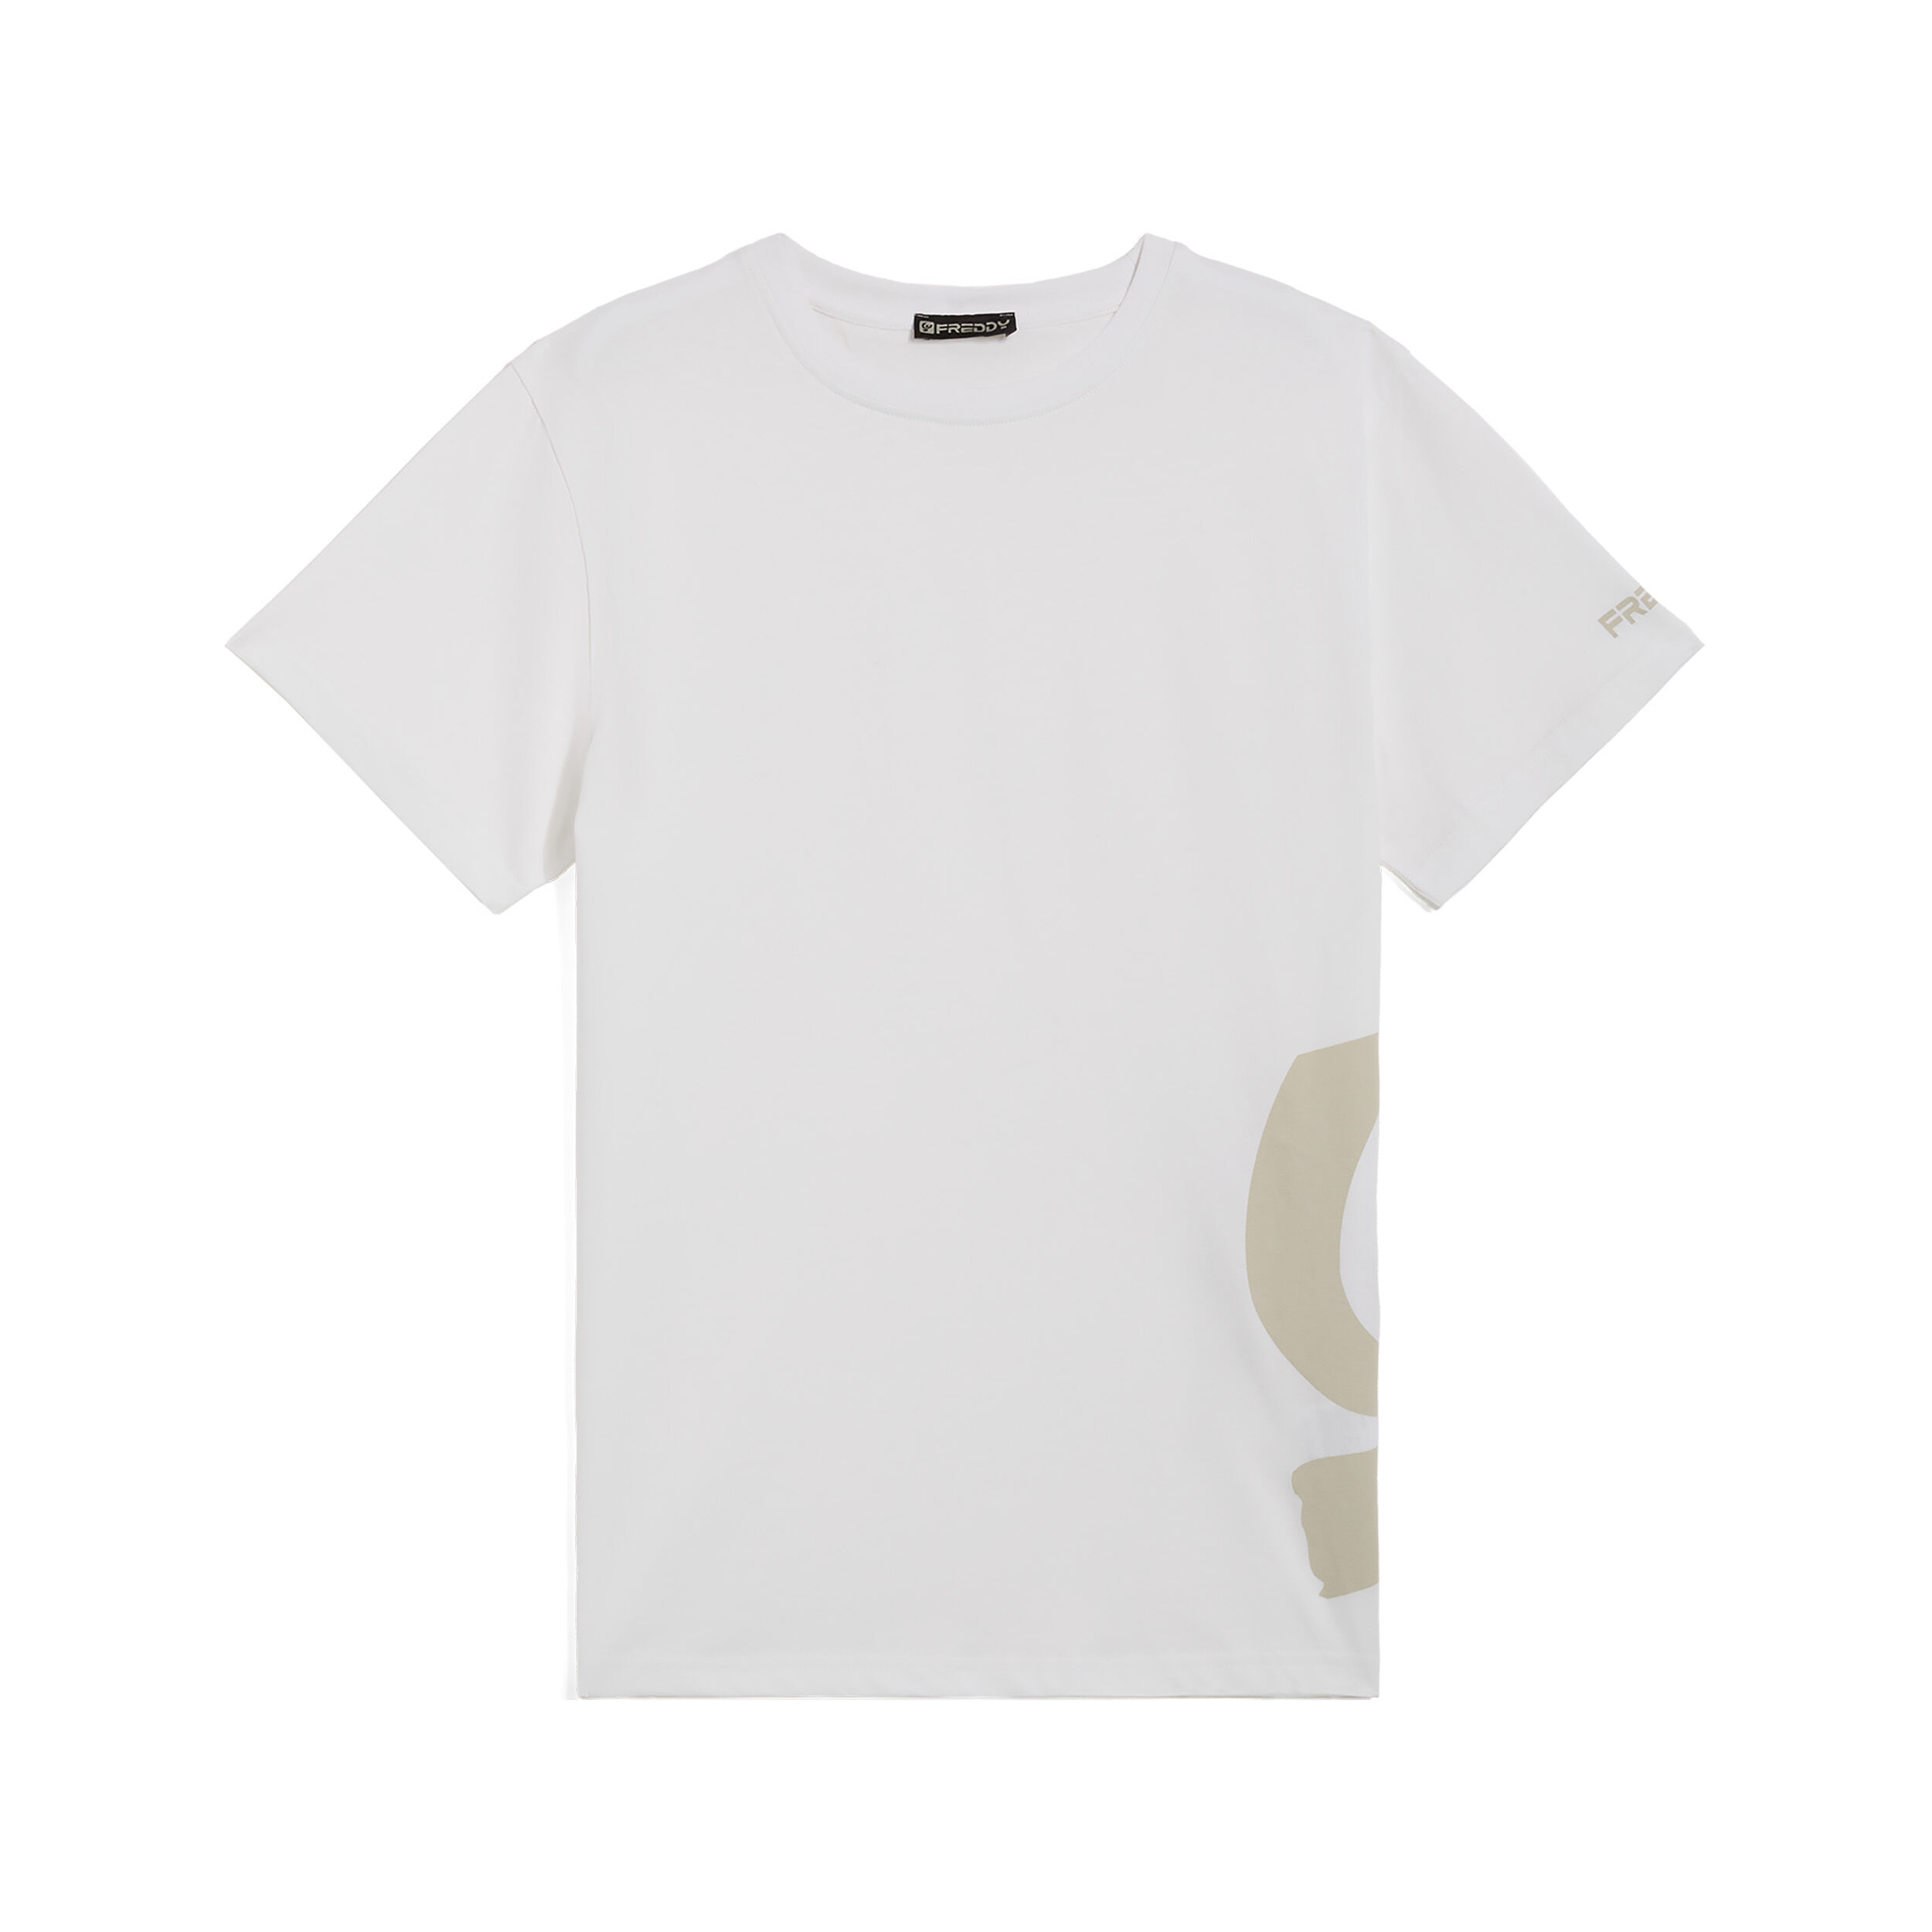 Freddy T-shirt da uomo con maxi logo in tono colore sul fianco Bianco Uomo Small